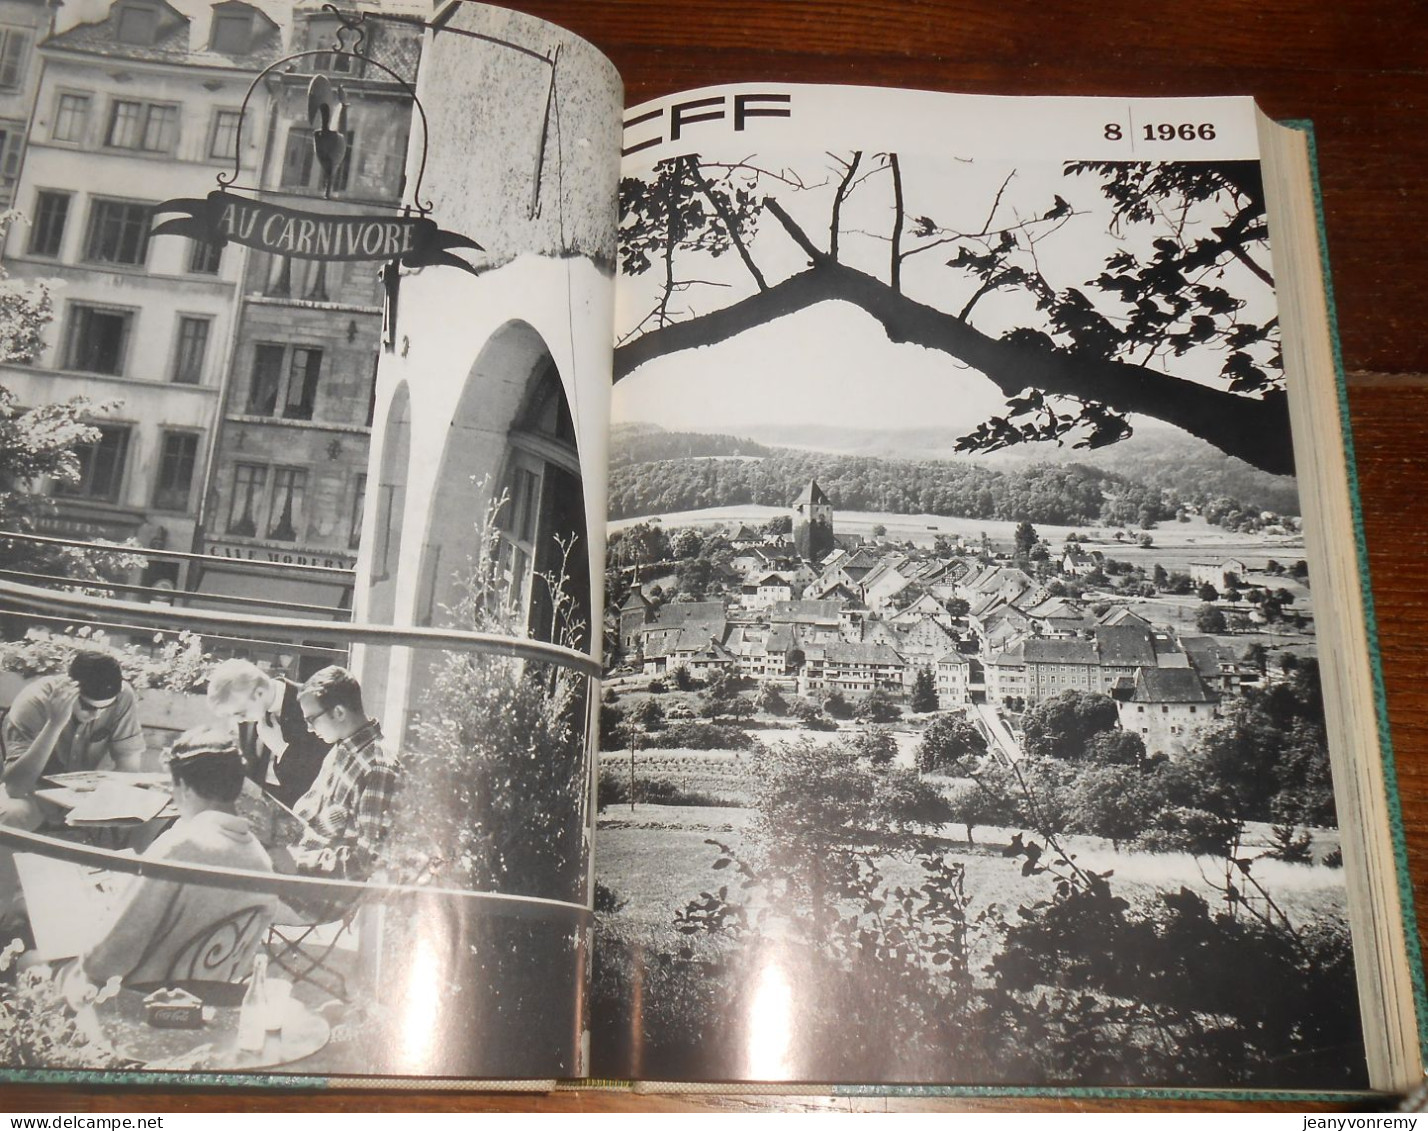 CFF. 24 revues reliées.1/1966 à 12/1967.